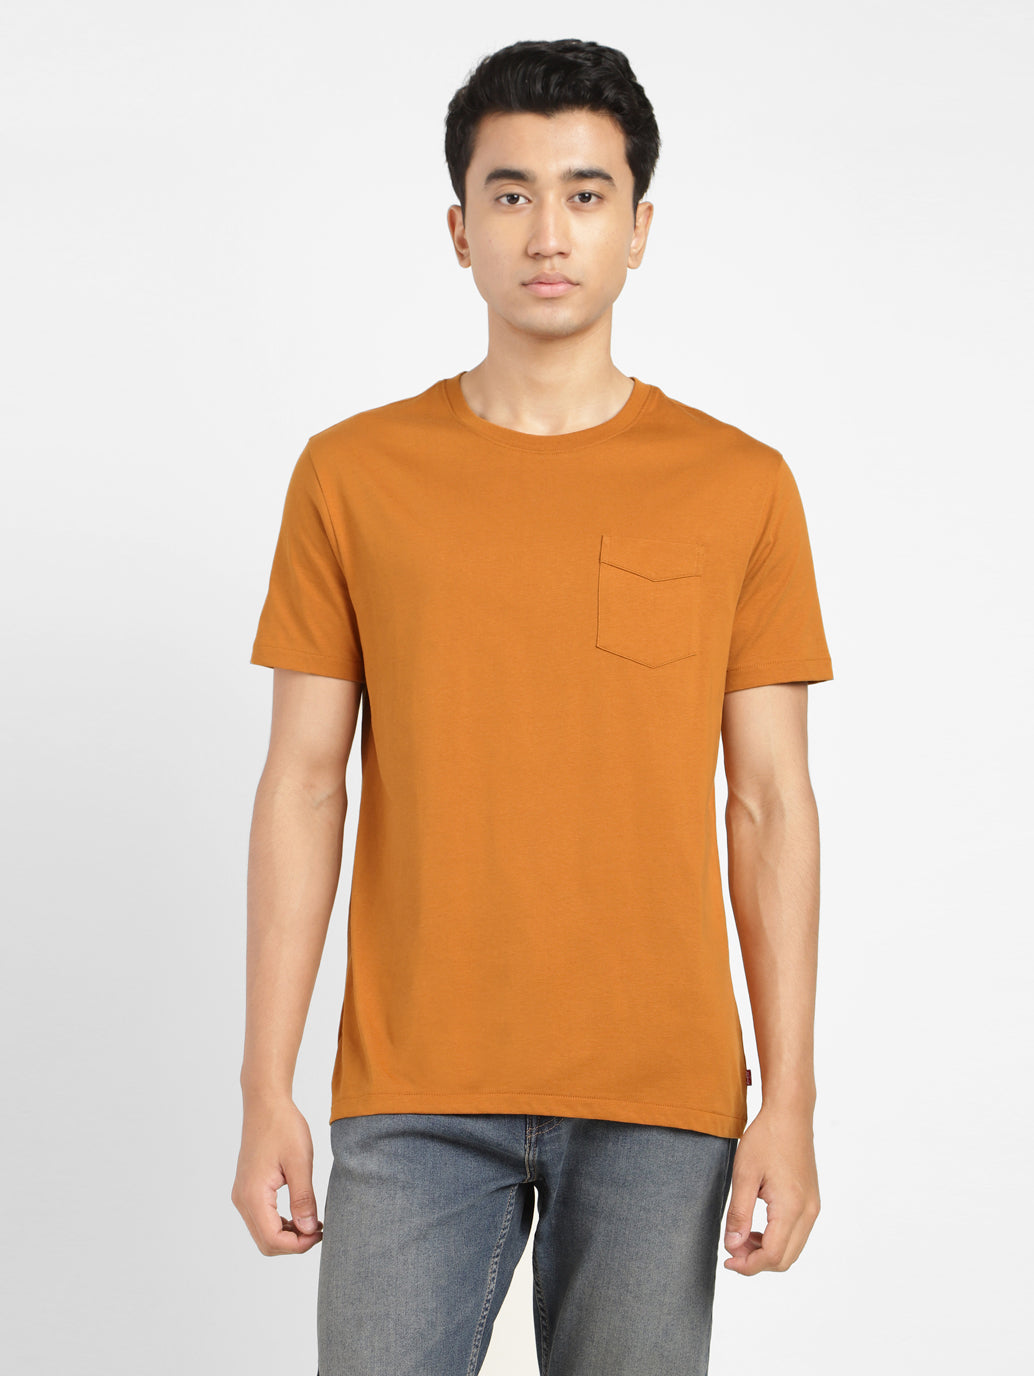 Men's Clementine Tangerine Short Sleeve Crew Neck Casual Tee Shirt Tops